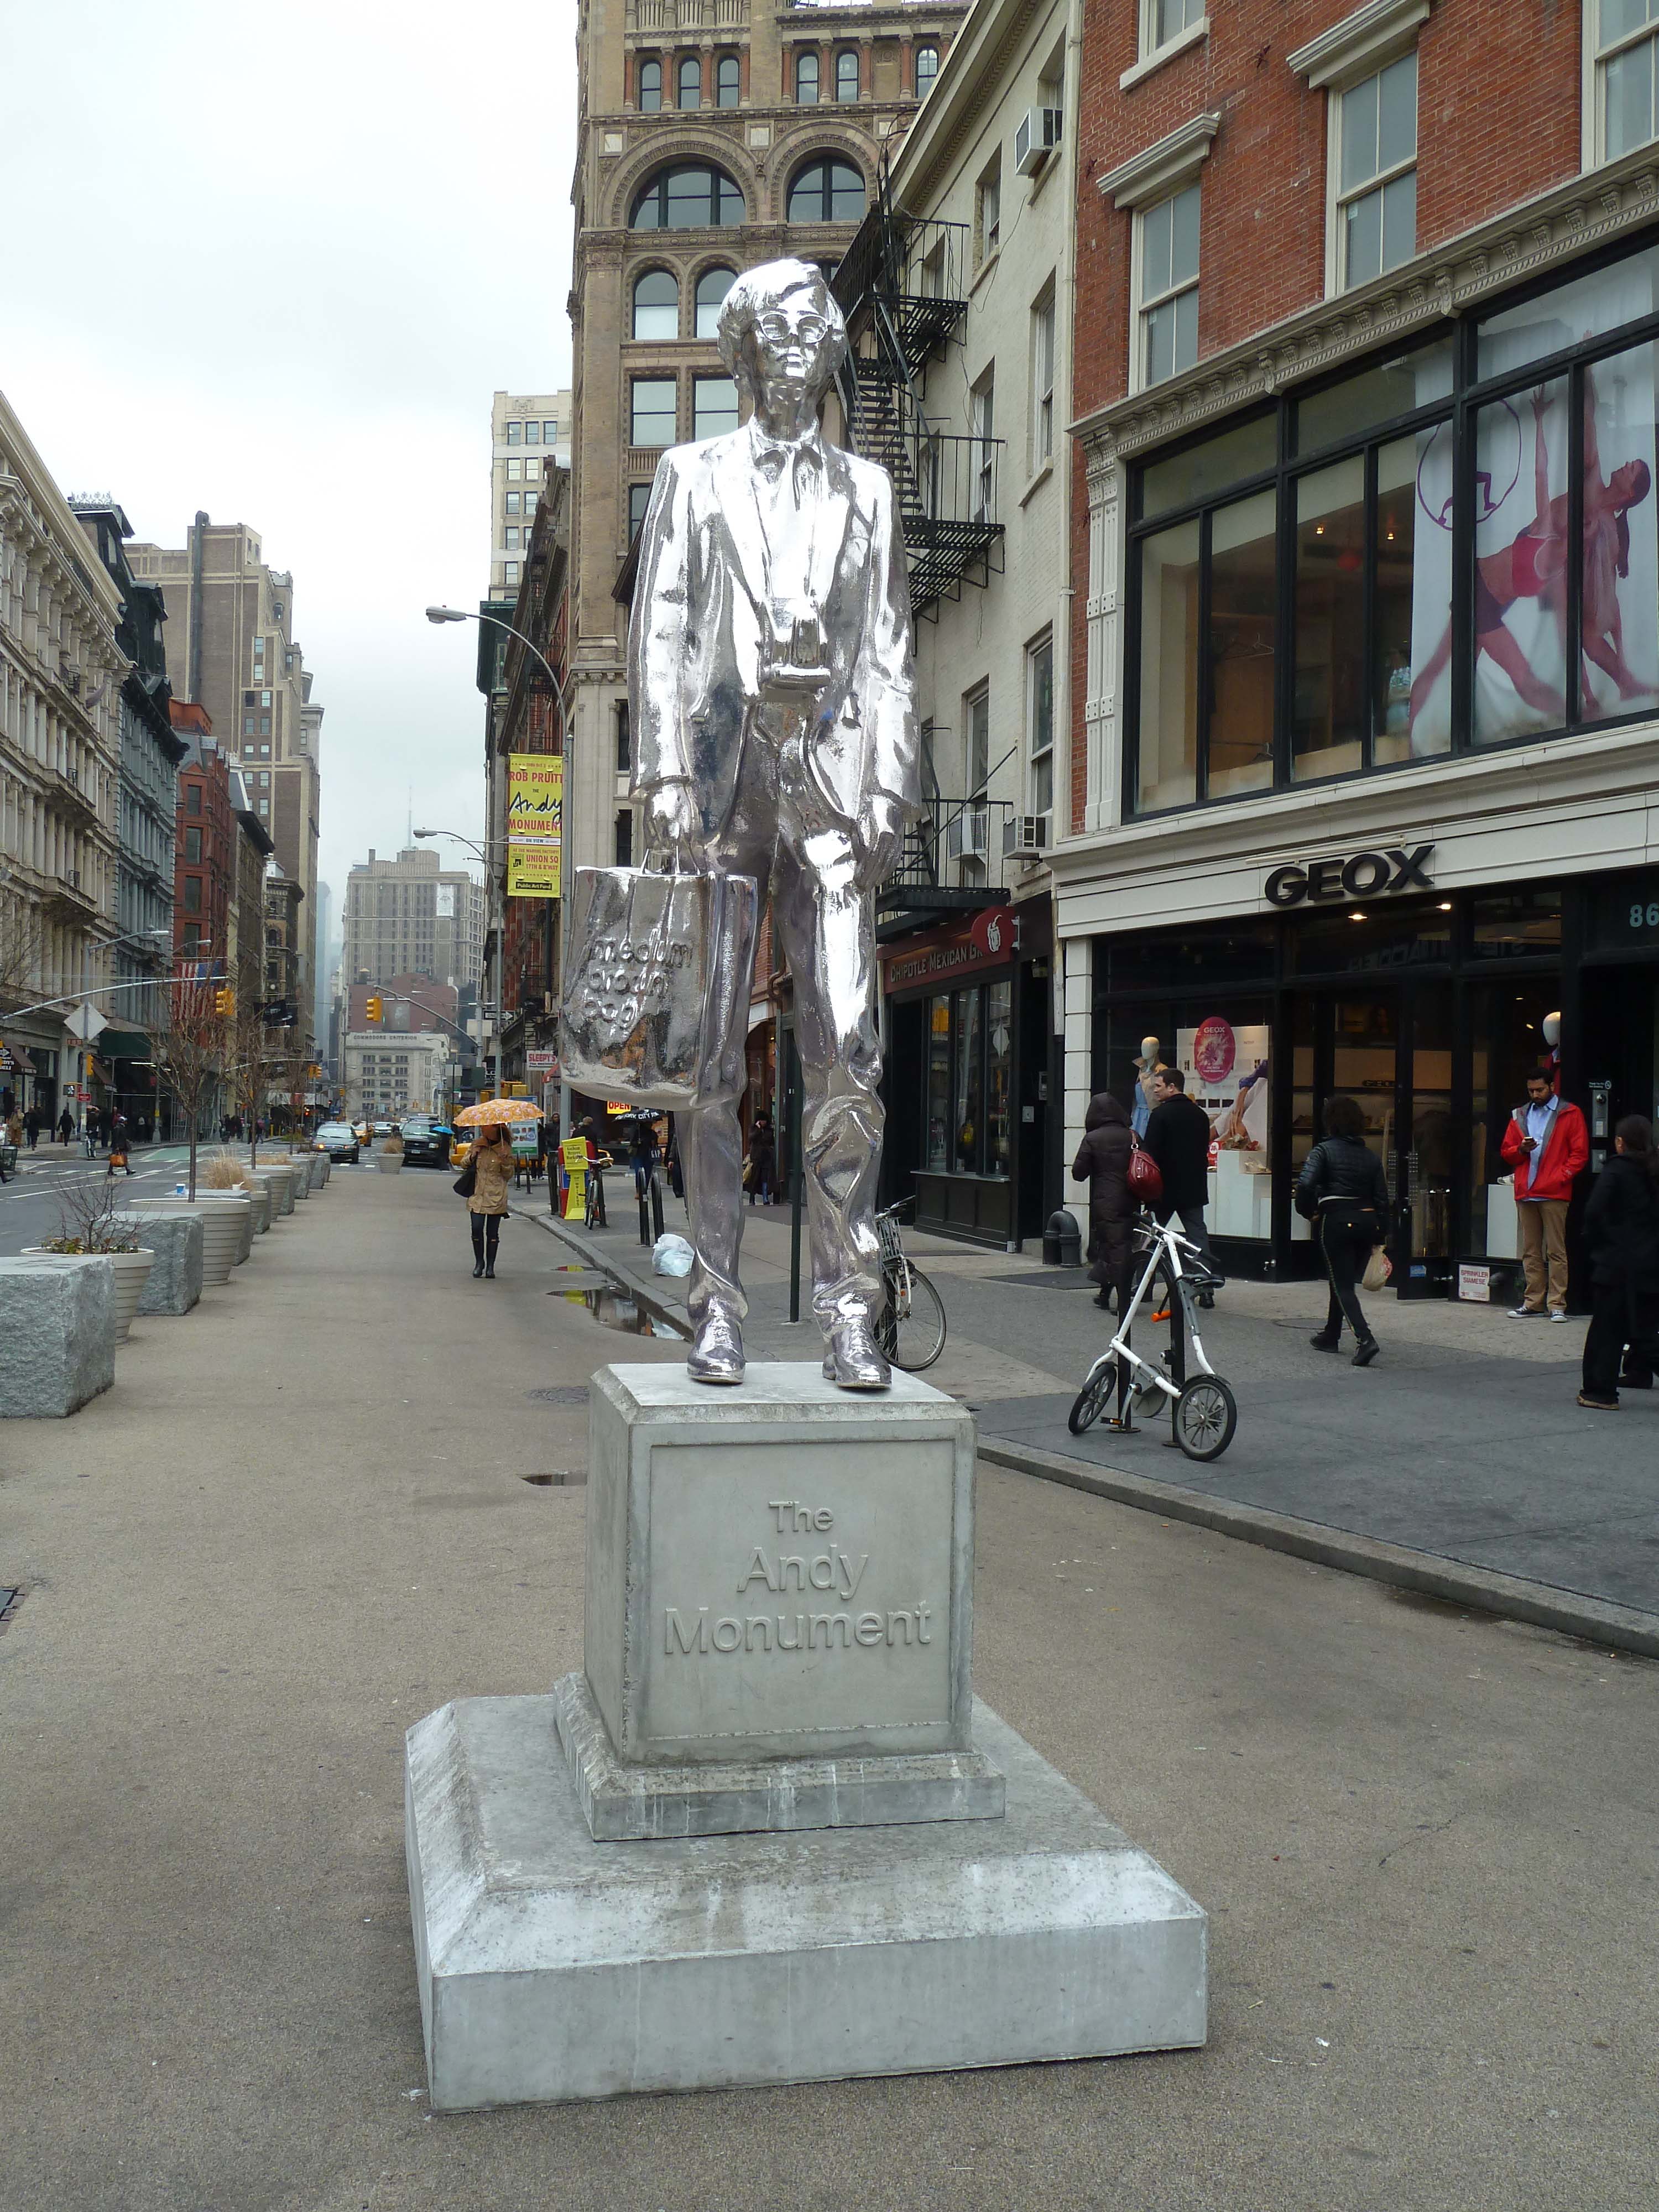 Памятник Энди Уорхолу. Монумент Энди, 2011. Роб Прюитт (Rob Pruitt) - современный американский художник. Современное искусство США